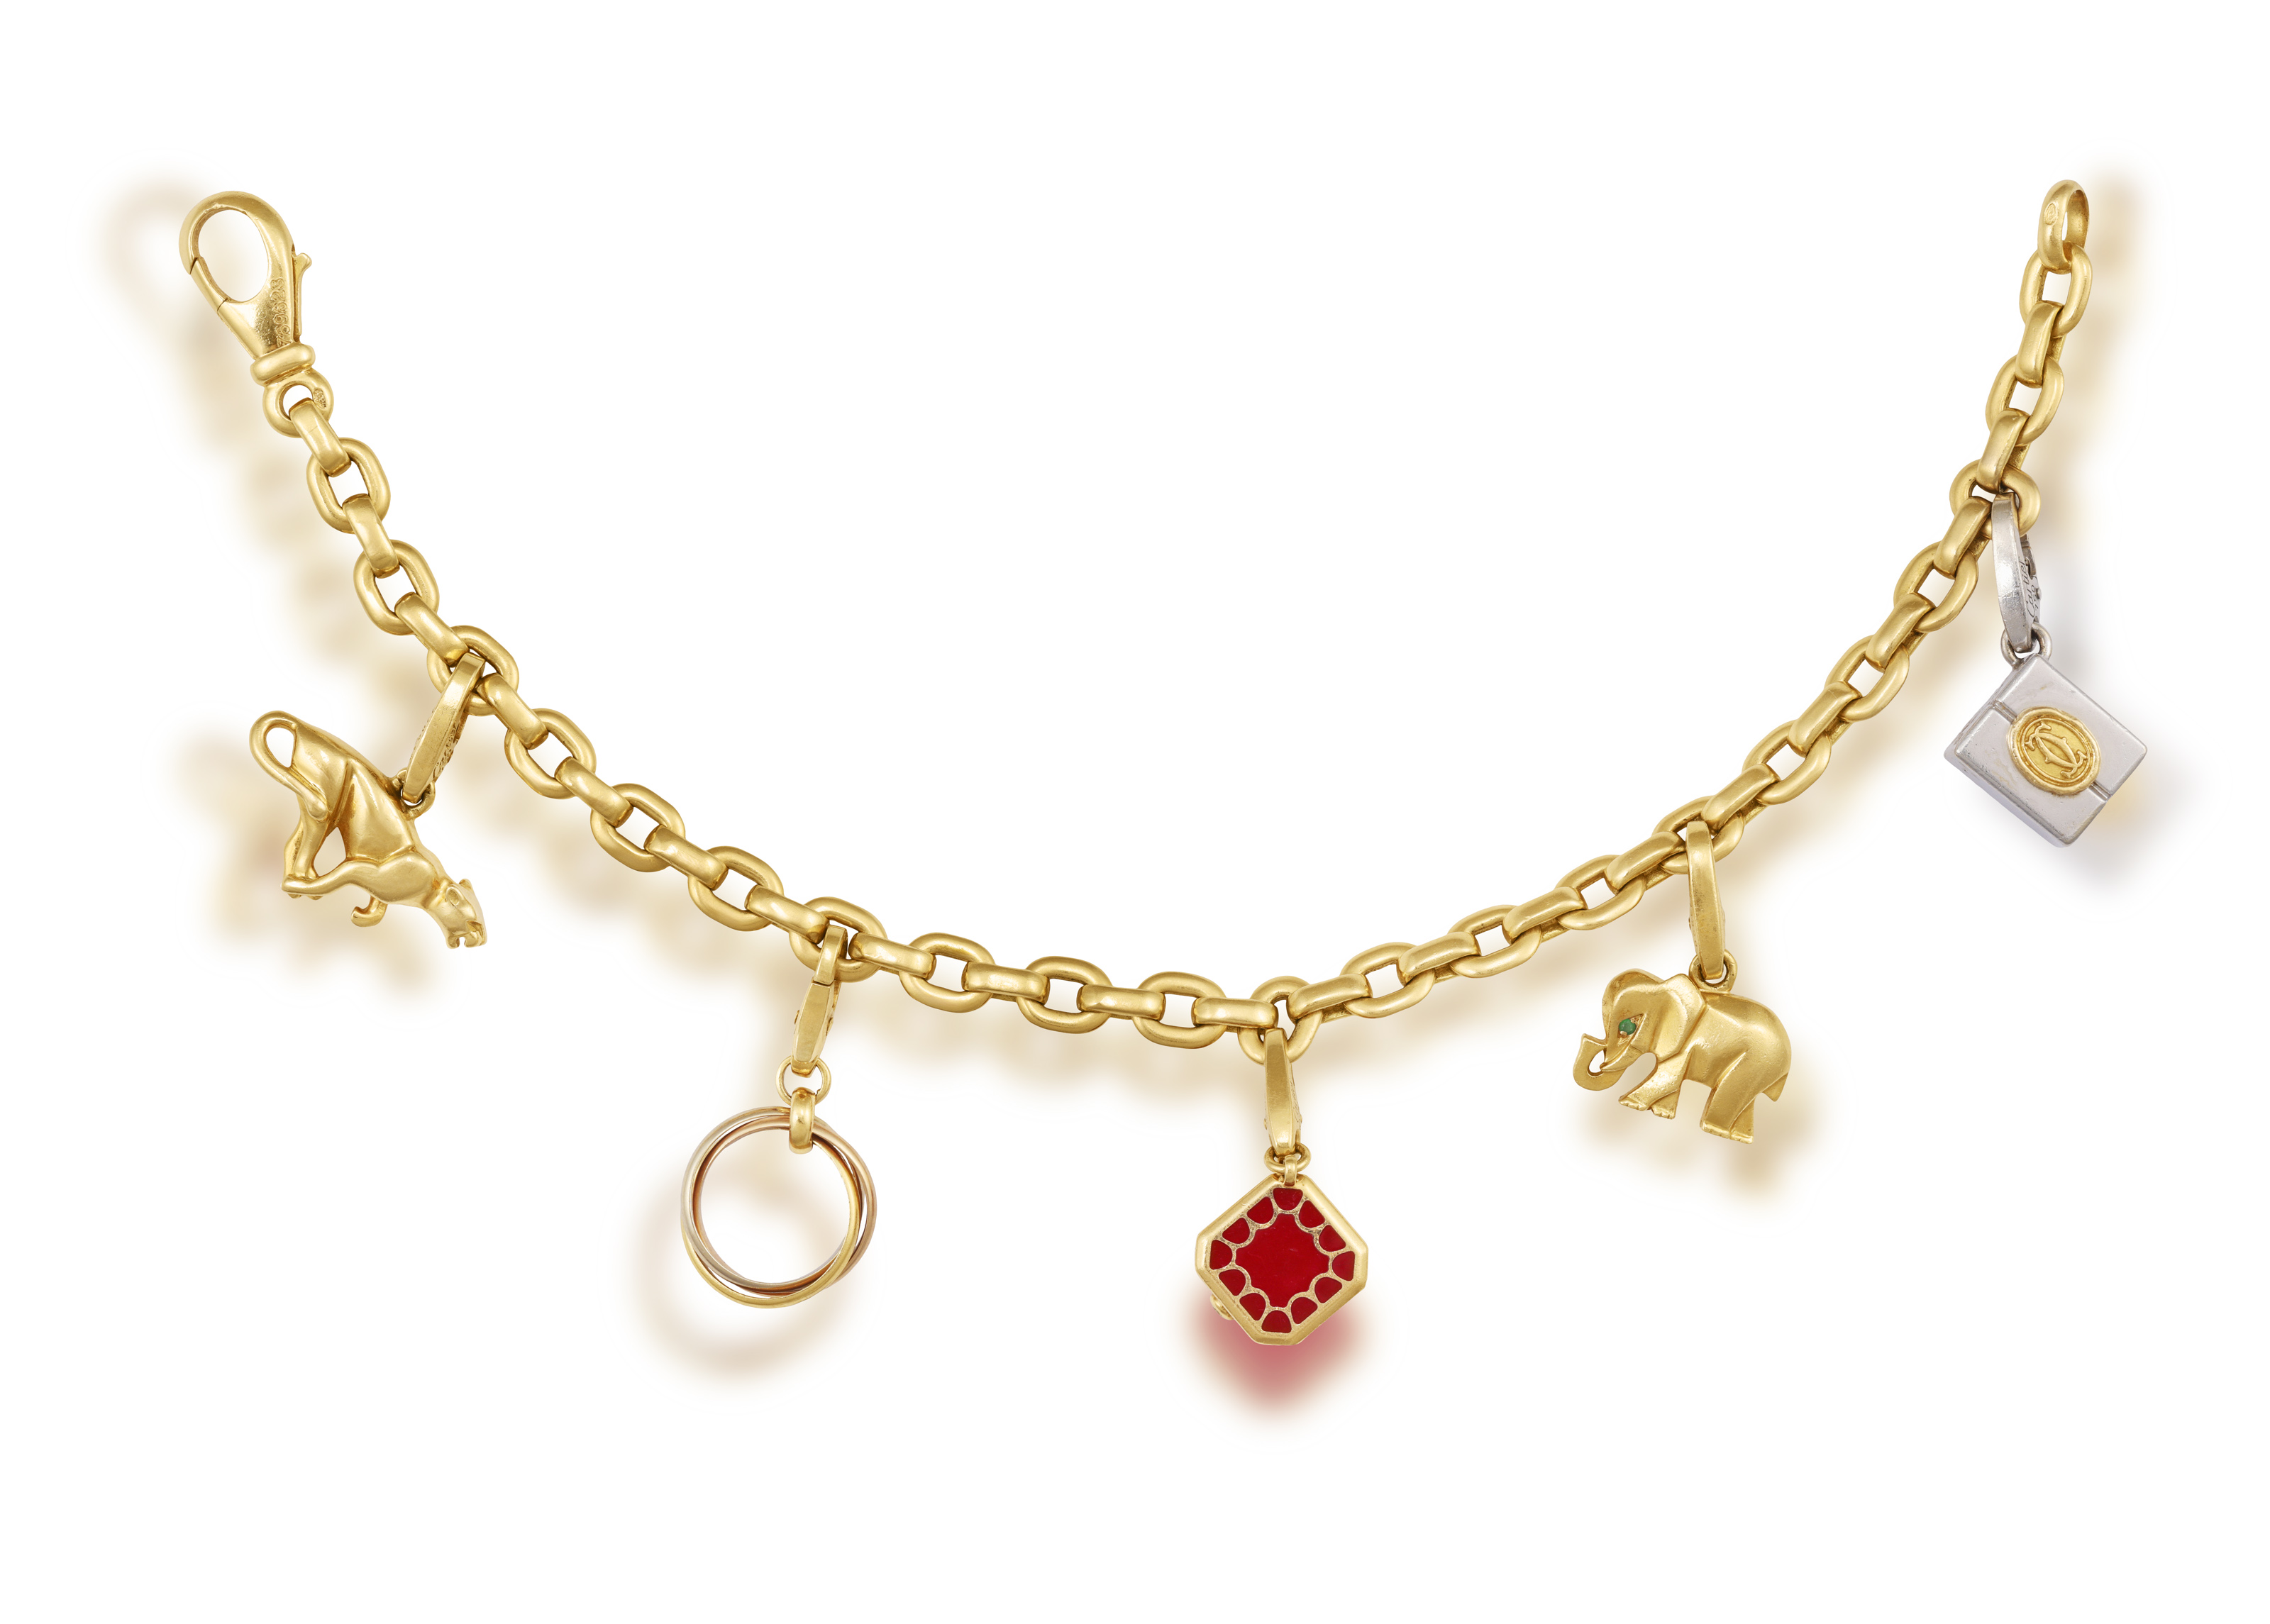 A GOLD CHARM BRACELET, BY CARTIER The belcher-link chain bracelet, suspending five detachable charms